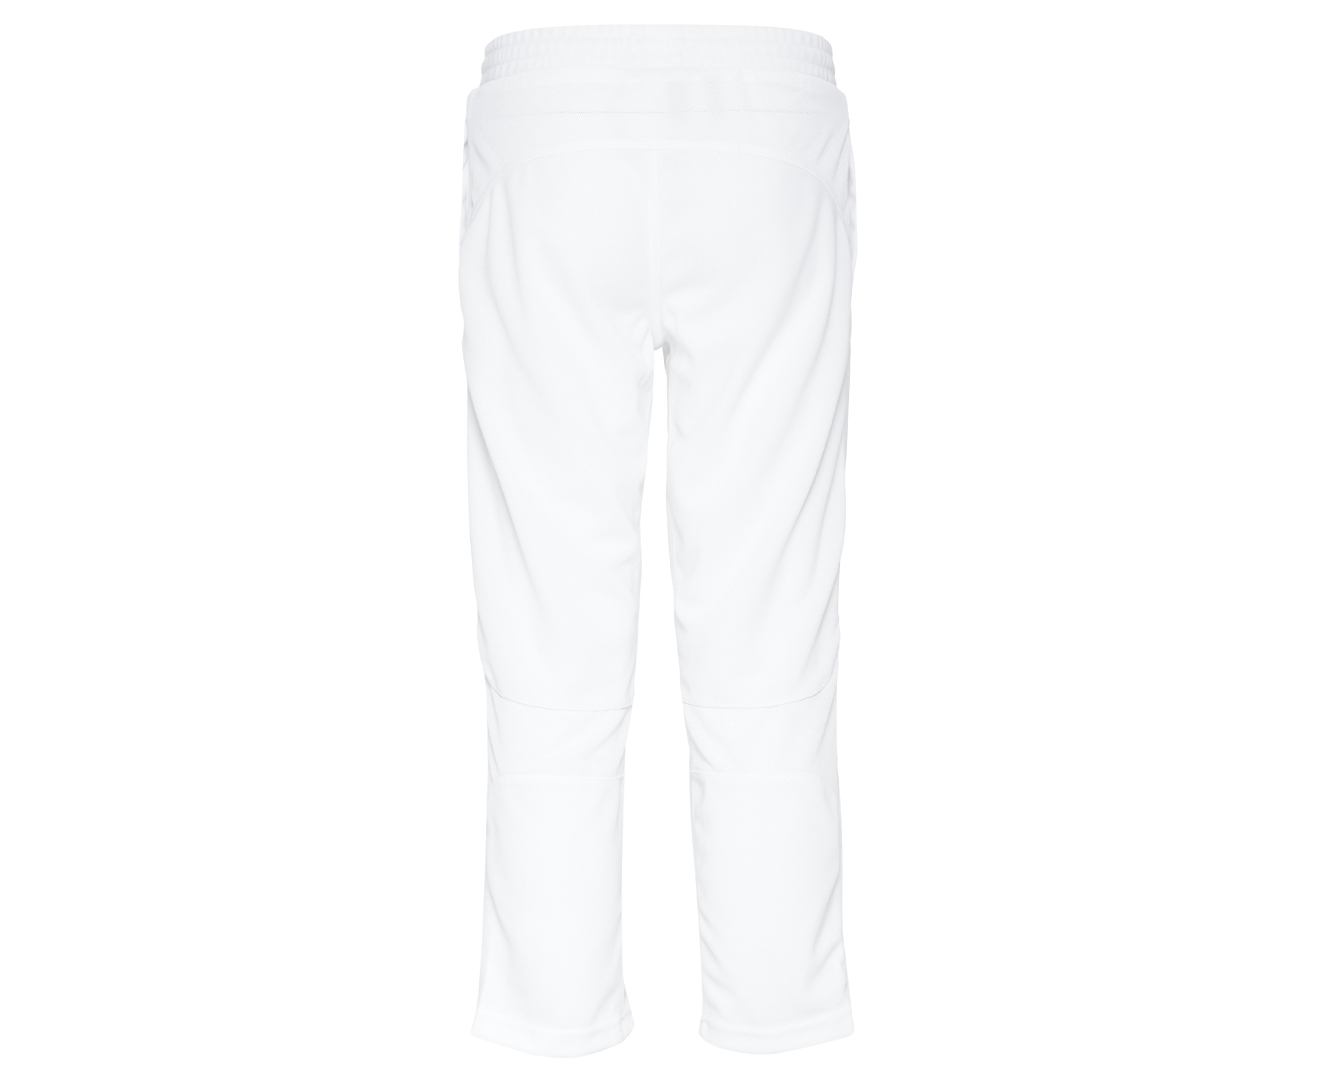 S Mark  Solid Men White Track Pants  Buy White S Mark  Solid Men White  Track Pants Online at Best Prices in India  Flipkartcom